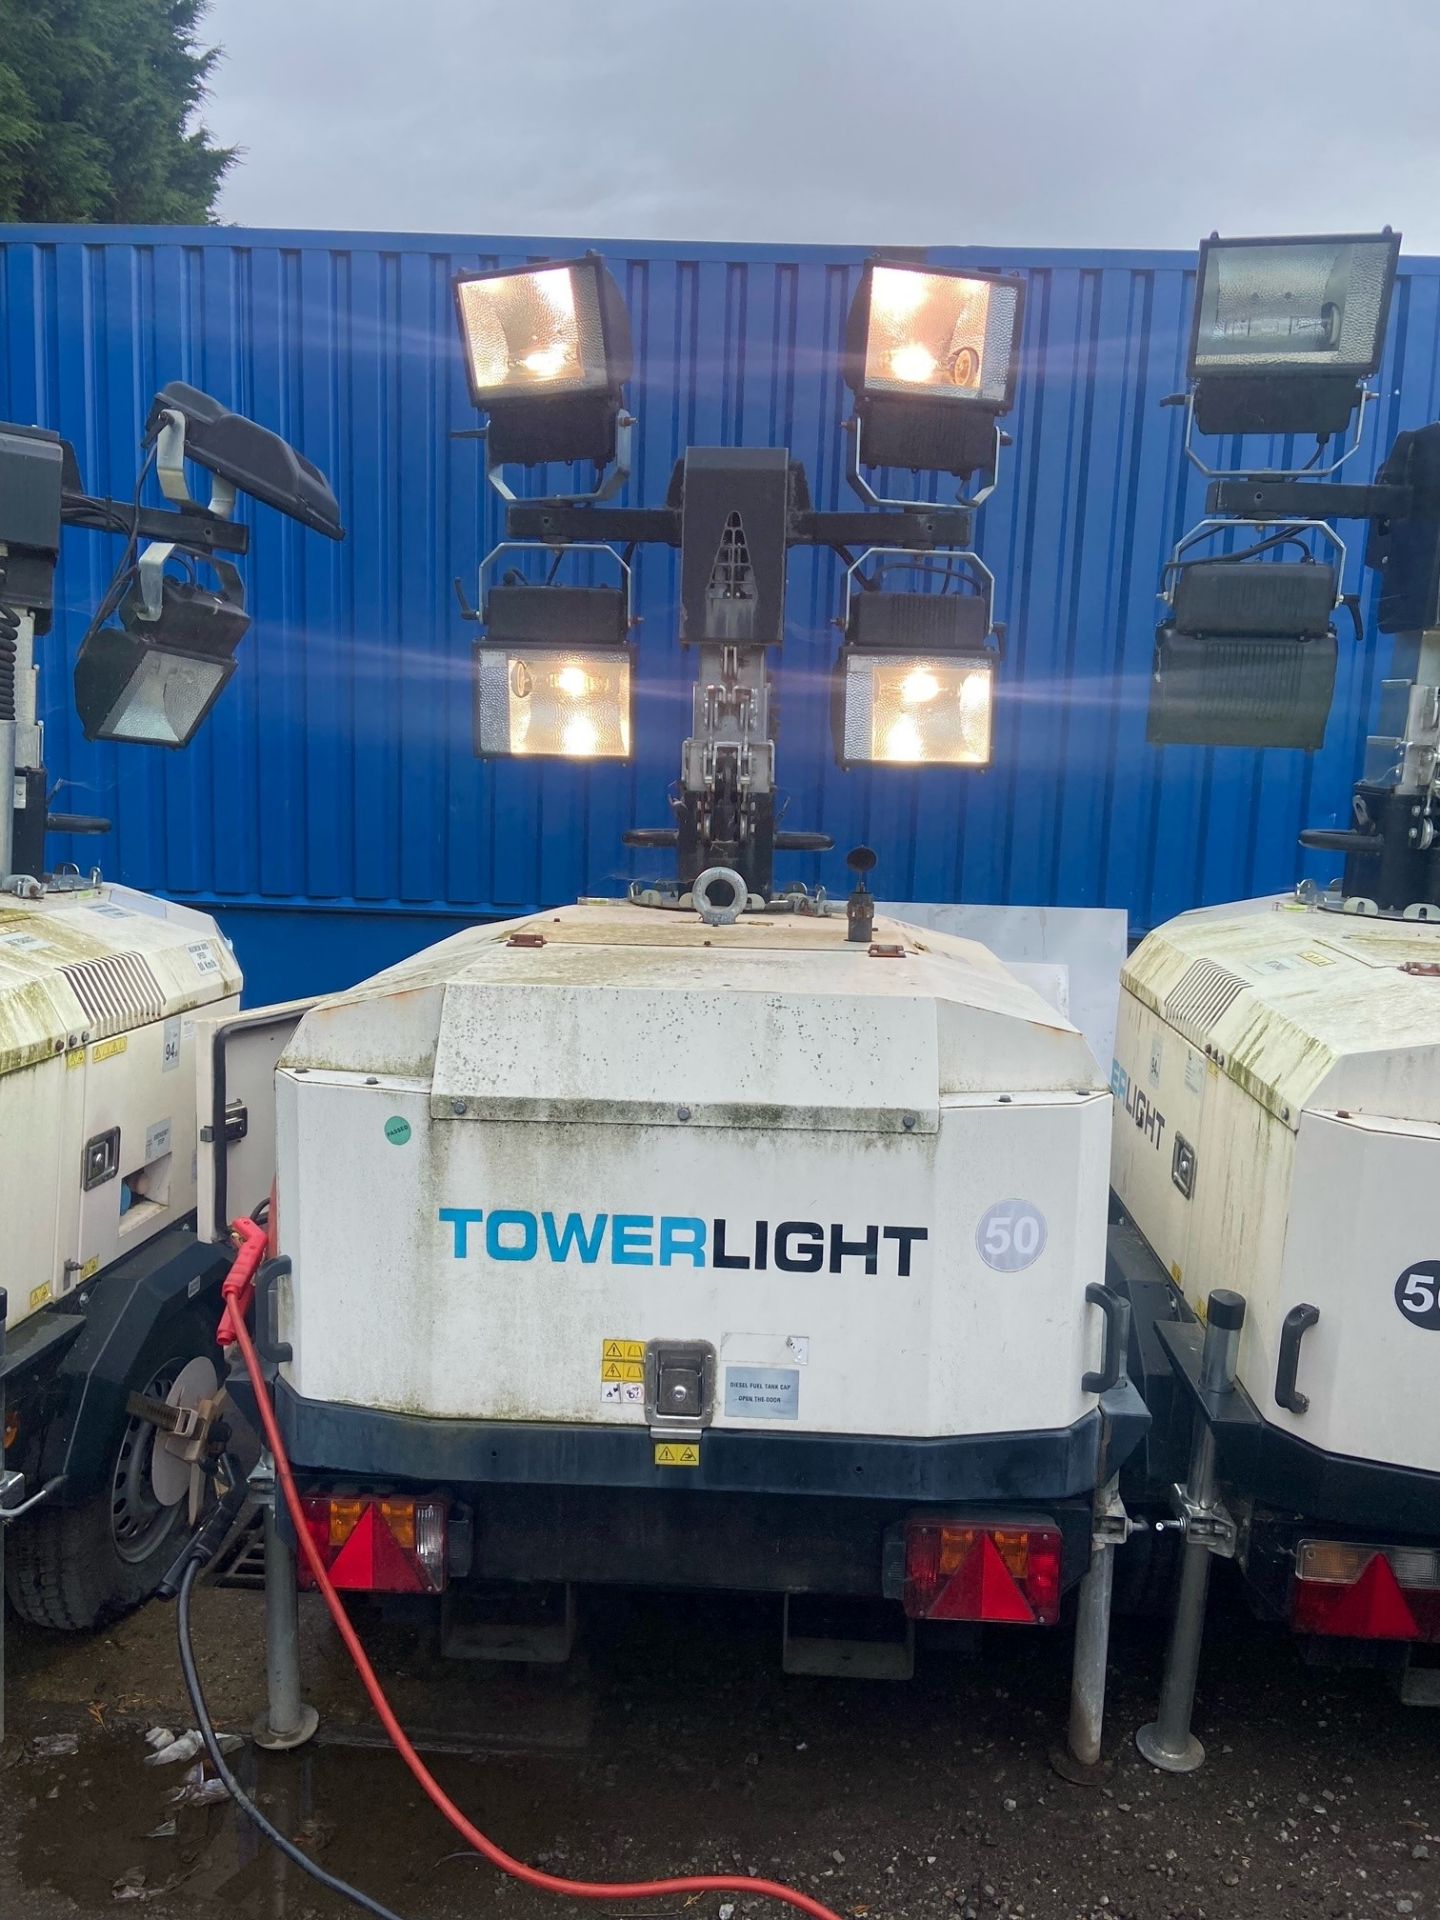 Towerlight VB9 4x400W metal halide lighting tower - Hatz 1B20-4 diesel engine - Linz E1C10S F gen - Bild 8 aus 18